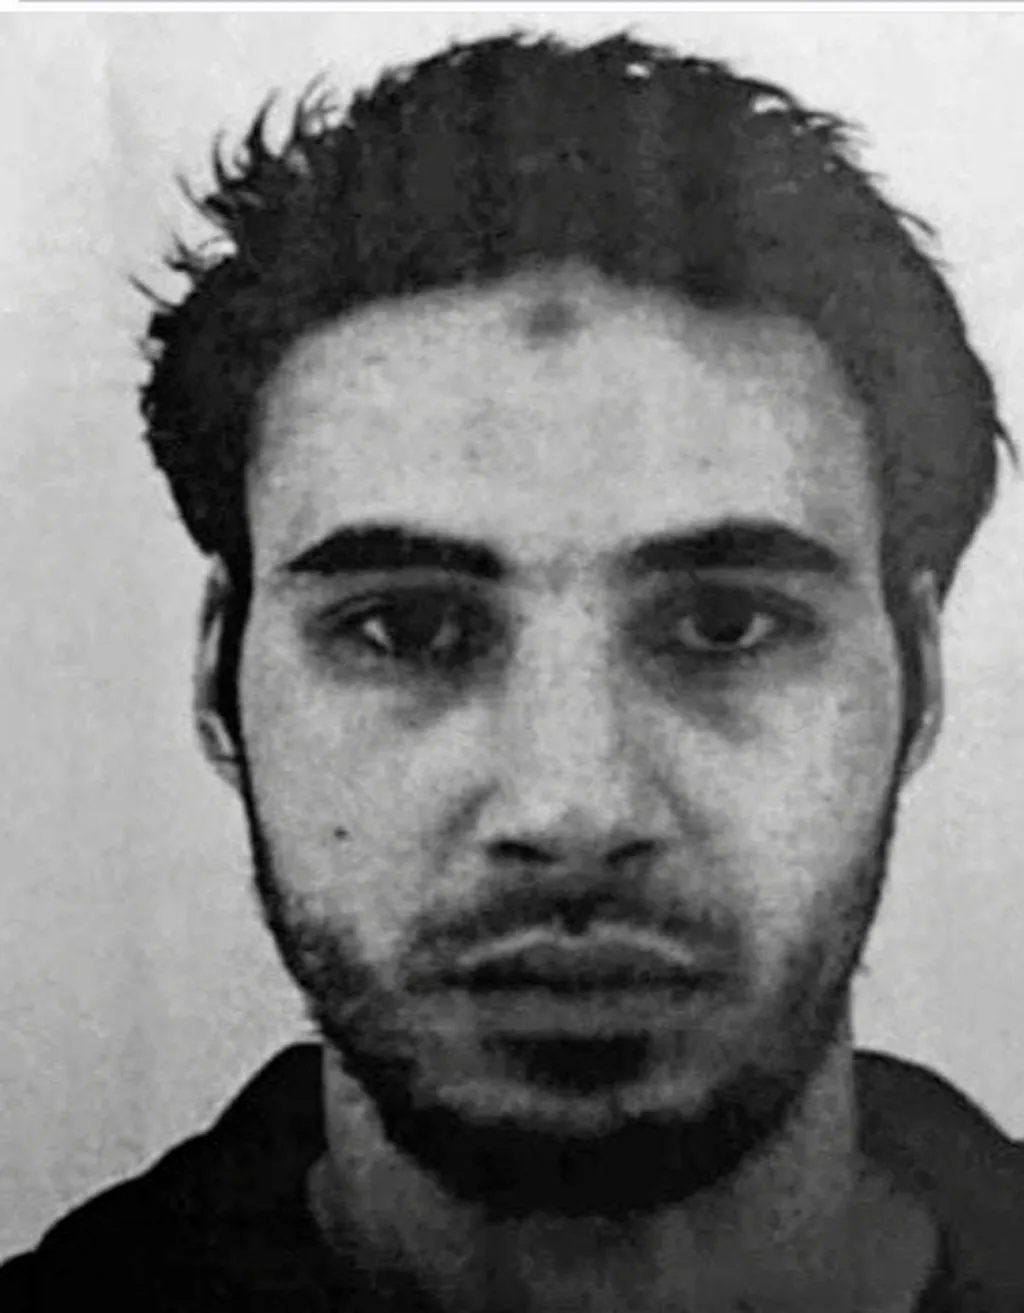 Devětadvacetiletý Chekatt Cherif, kterého francouzské úřady označily za pachatele úterního masakru u vánočního trhu ve Štrasburku, byl na seznamu osob podezřelých z islámského radikalismu